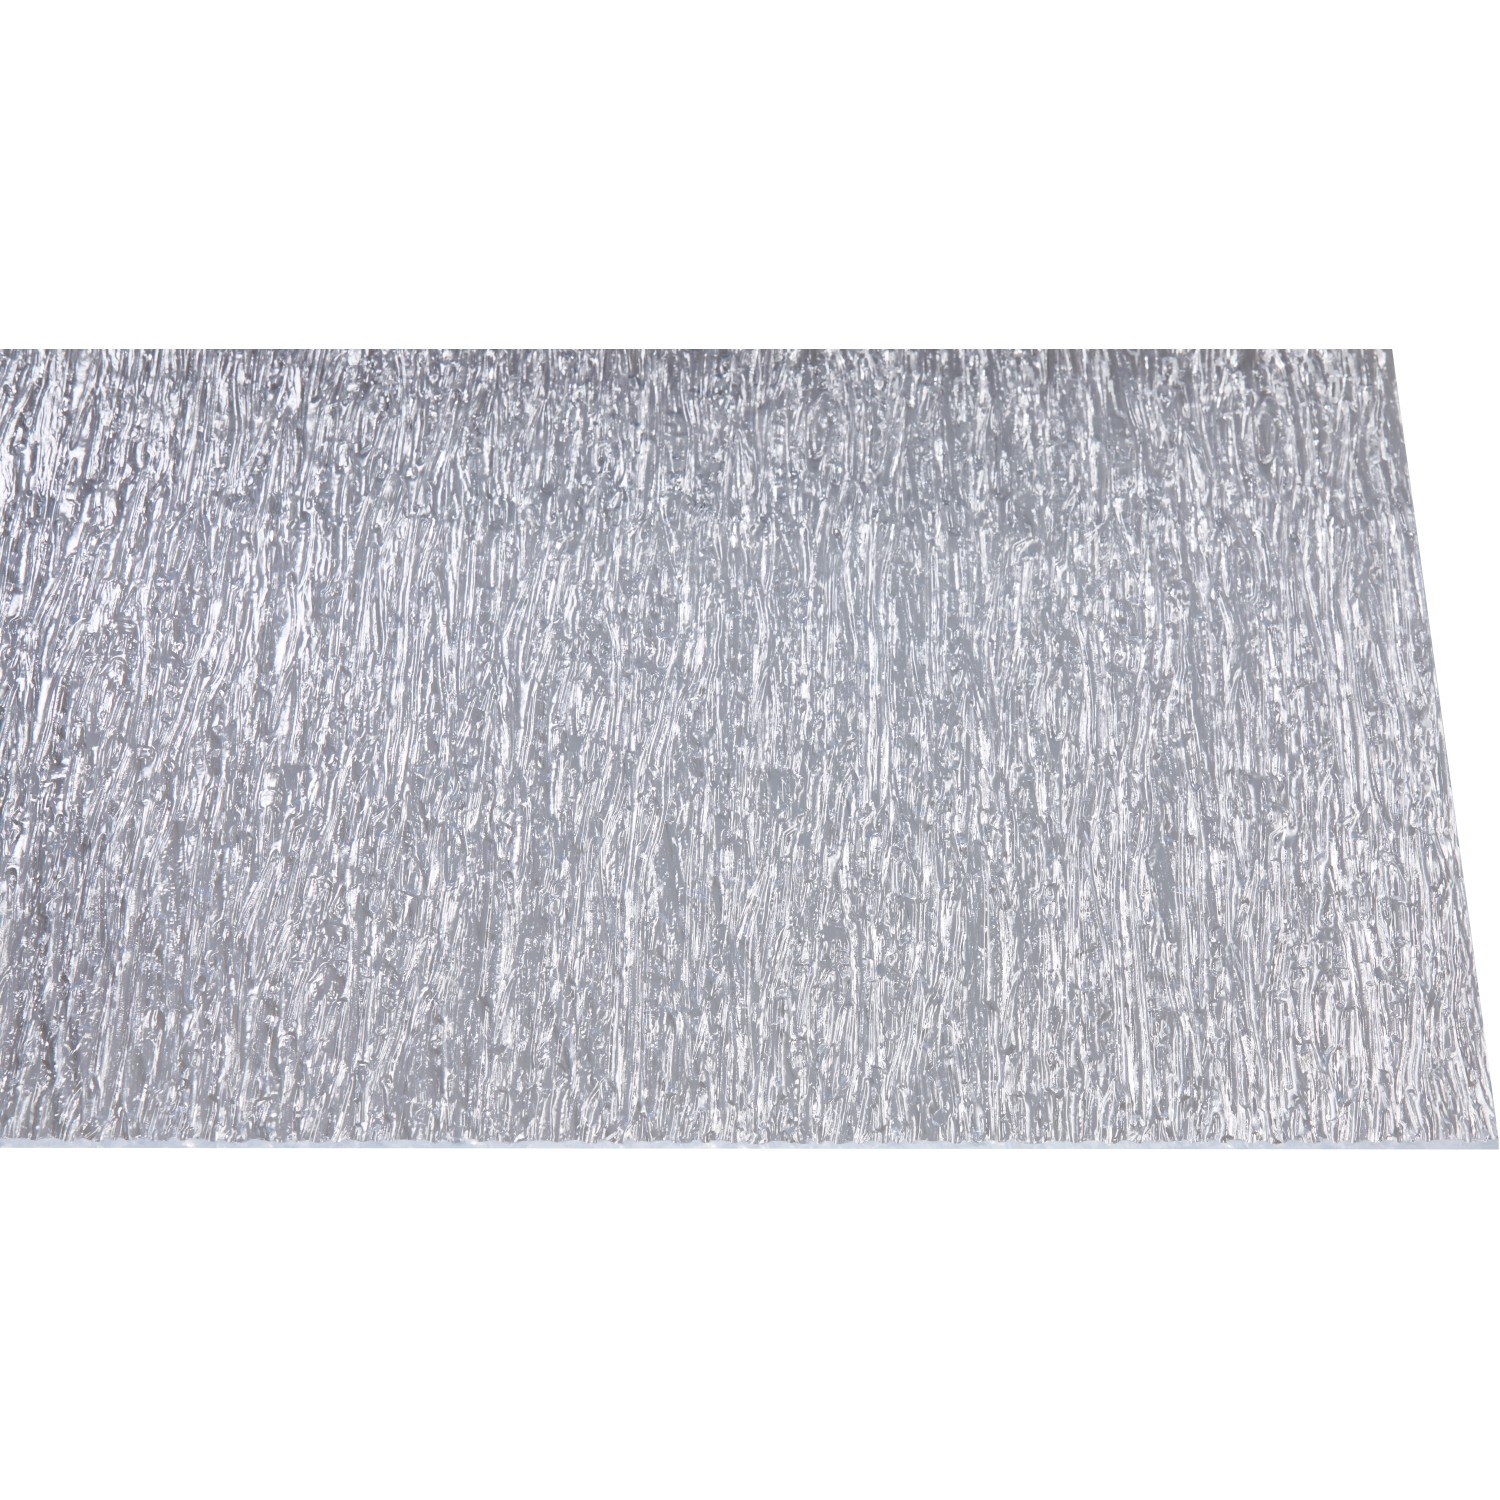 Polystyrol-Platte 5 mm Rinde grob Transparent 1000 mm x 500 mm von Gutta